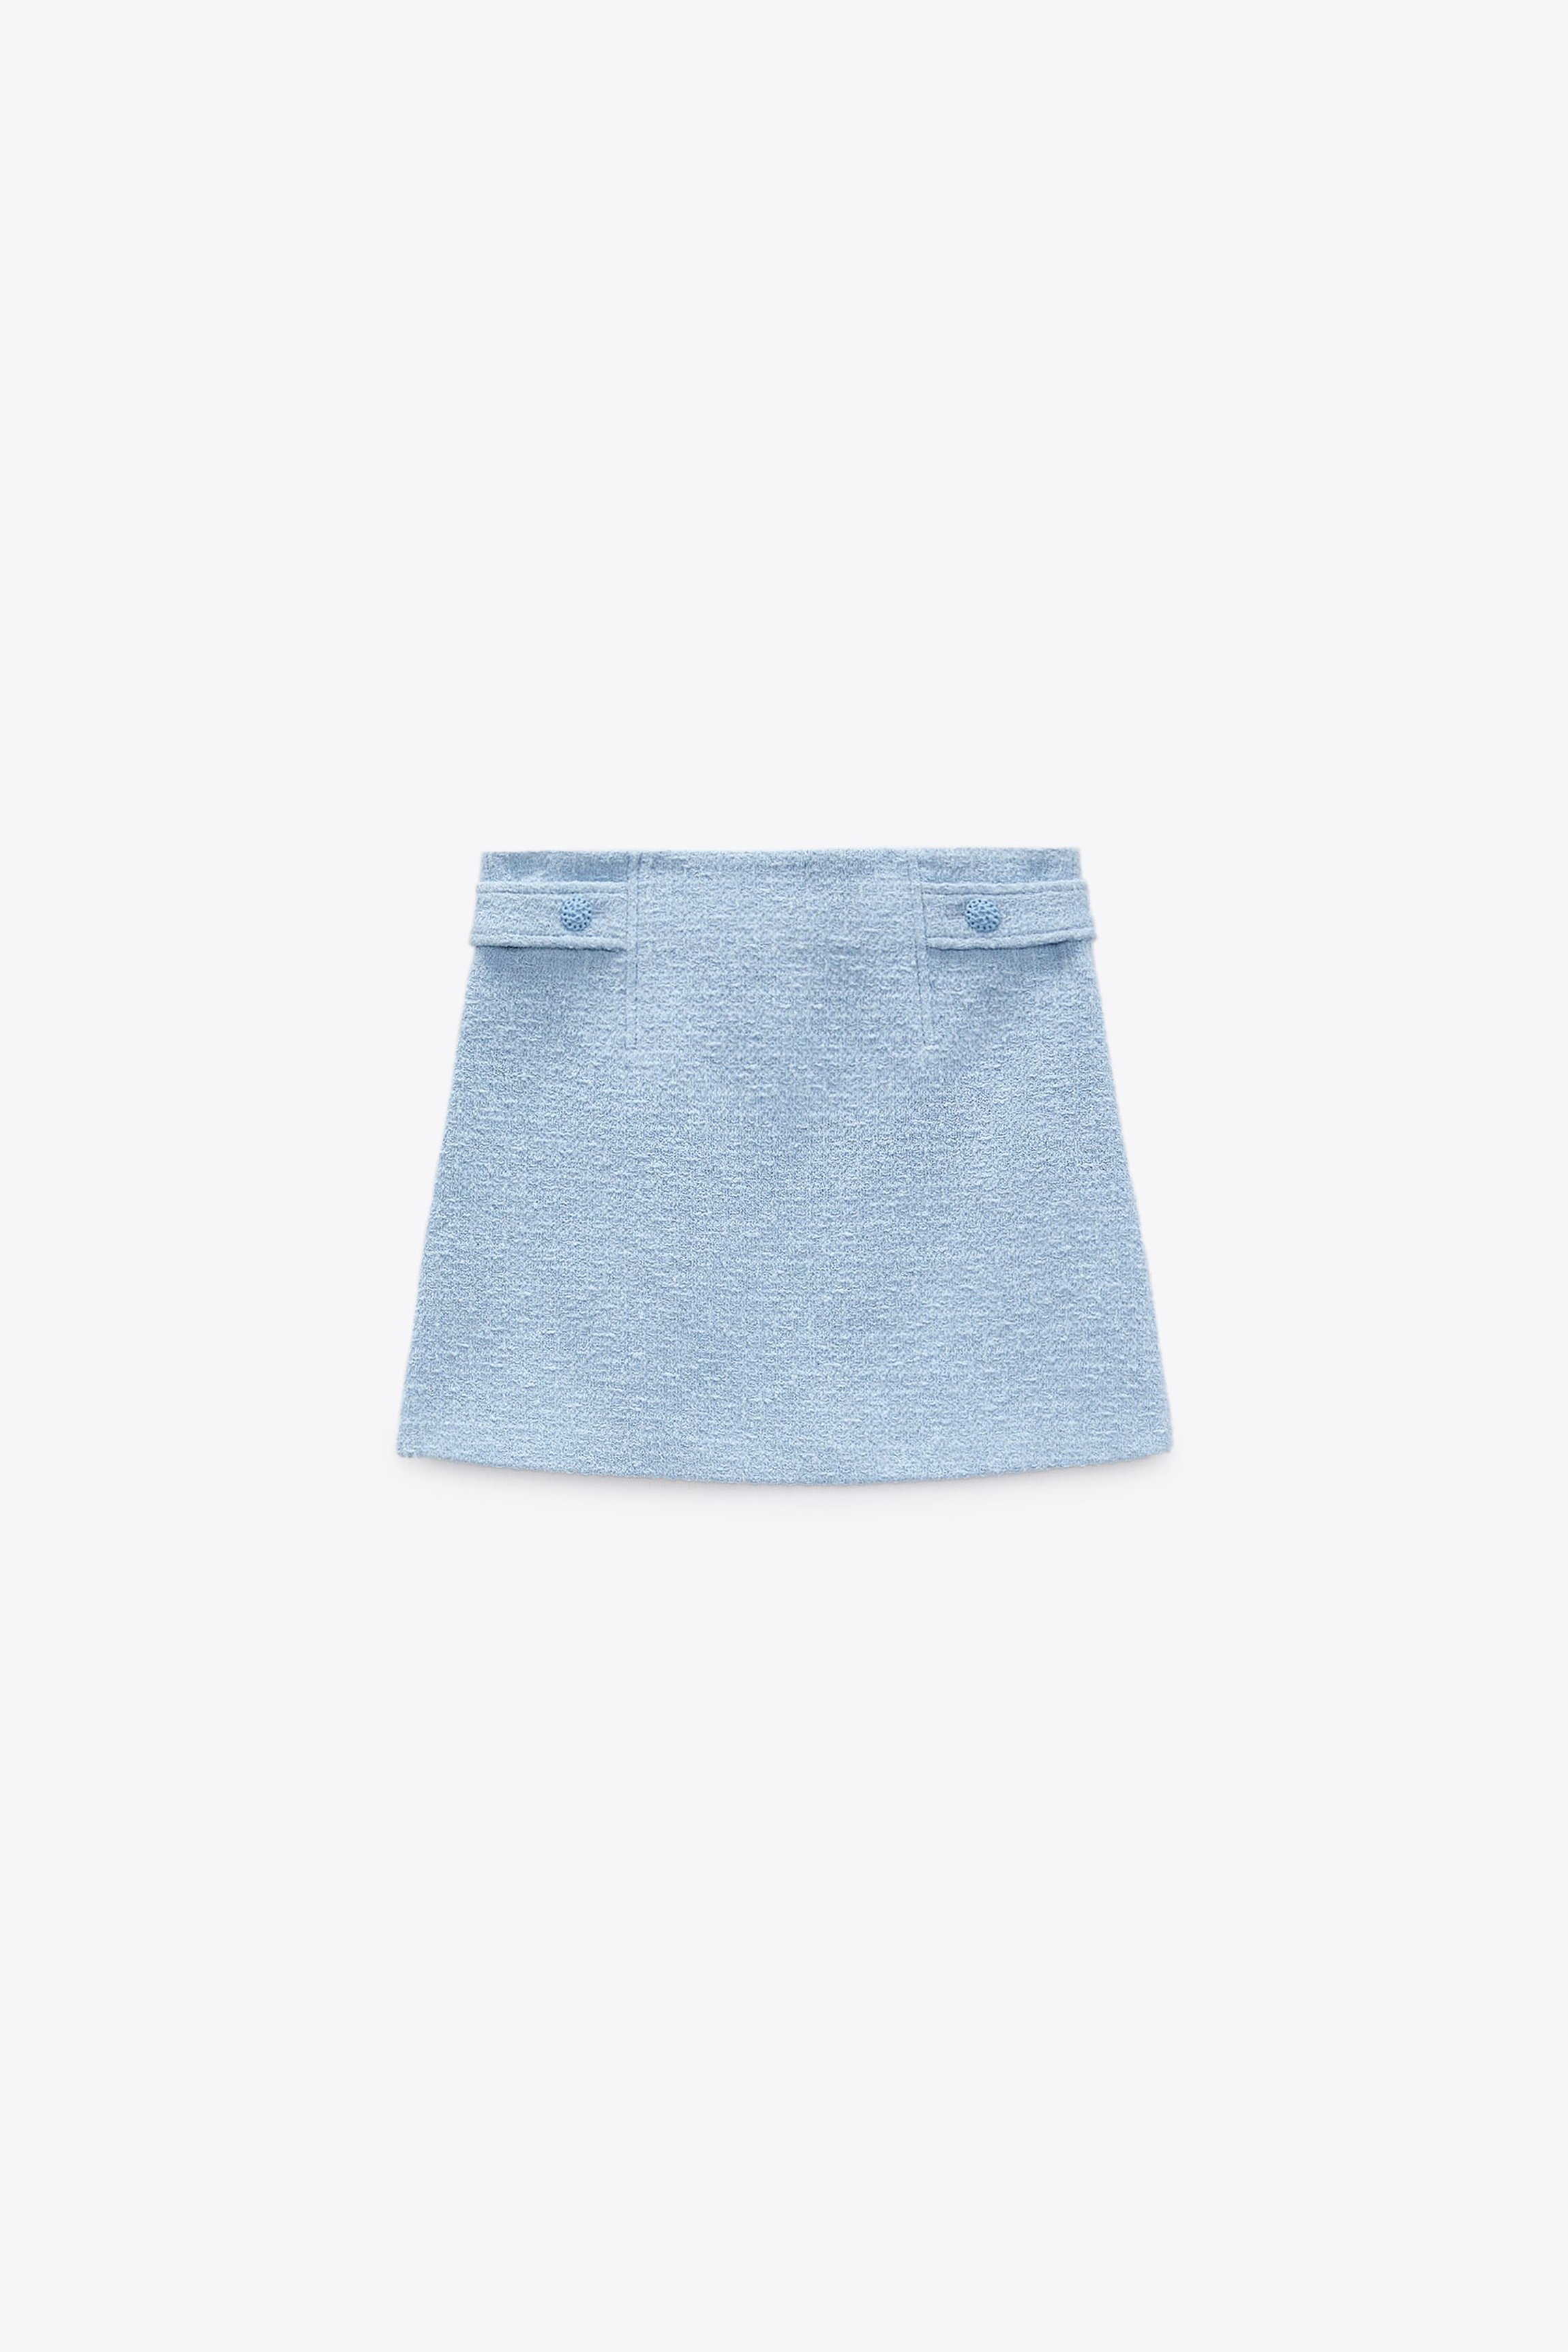 4&gt; Zara Textured Blazer with Button Details in Sky Blue €69.95; Short Textured Skirt in Sky Blue, €39.95,